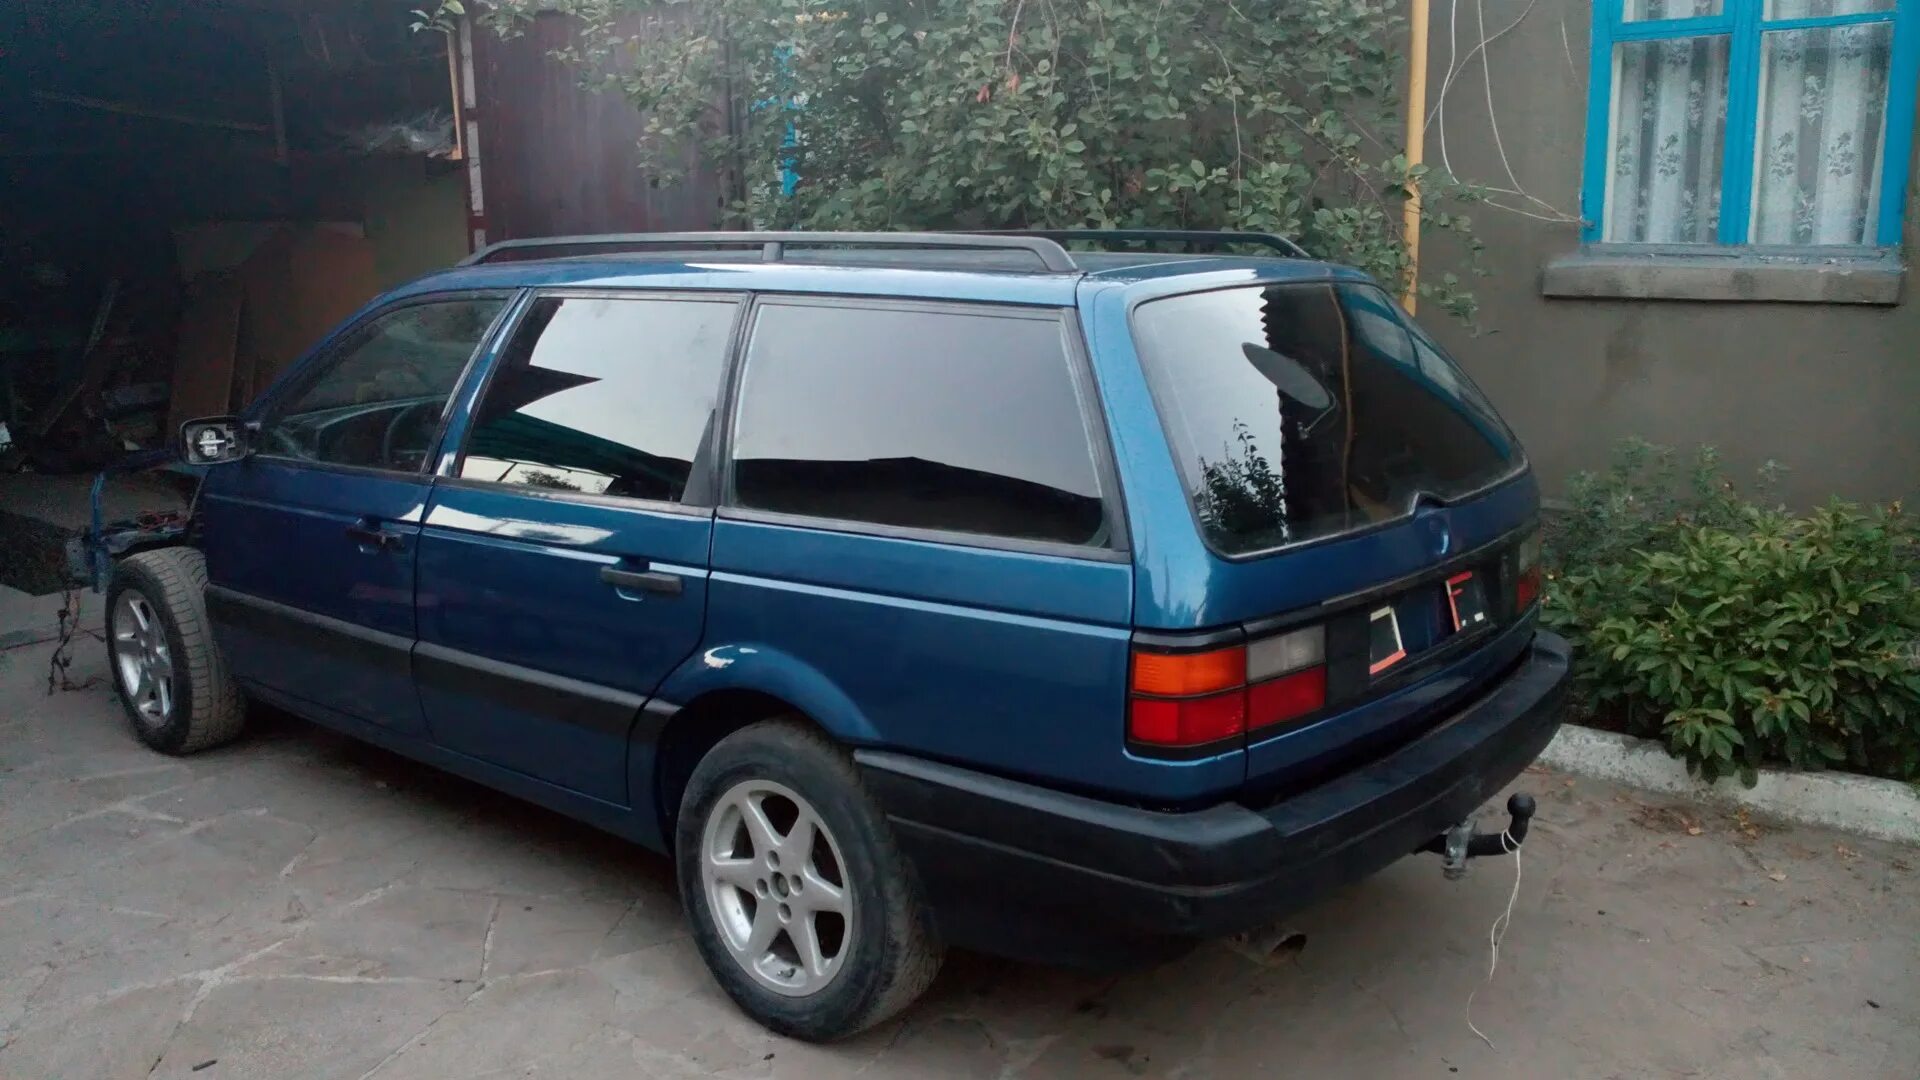 Купить бу пассат дизель. Volkswagen Passat b3 универсал 1993. Volkswagen Passat b3 1990 универсал. Фольксваген Пассат б3 универсал синий. Volkswagen Passat b3 универсал синий.